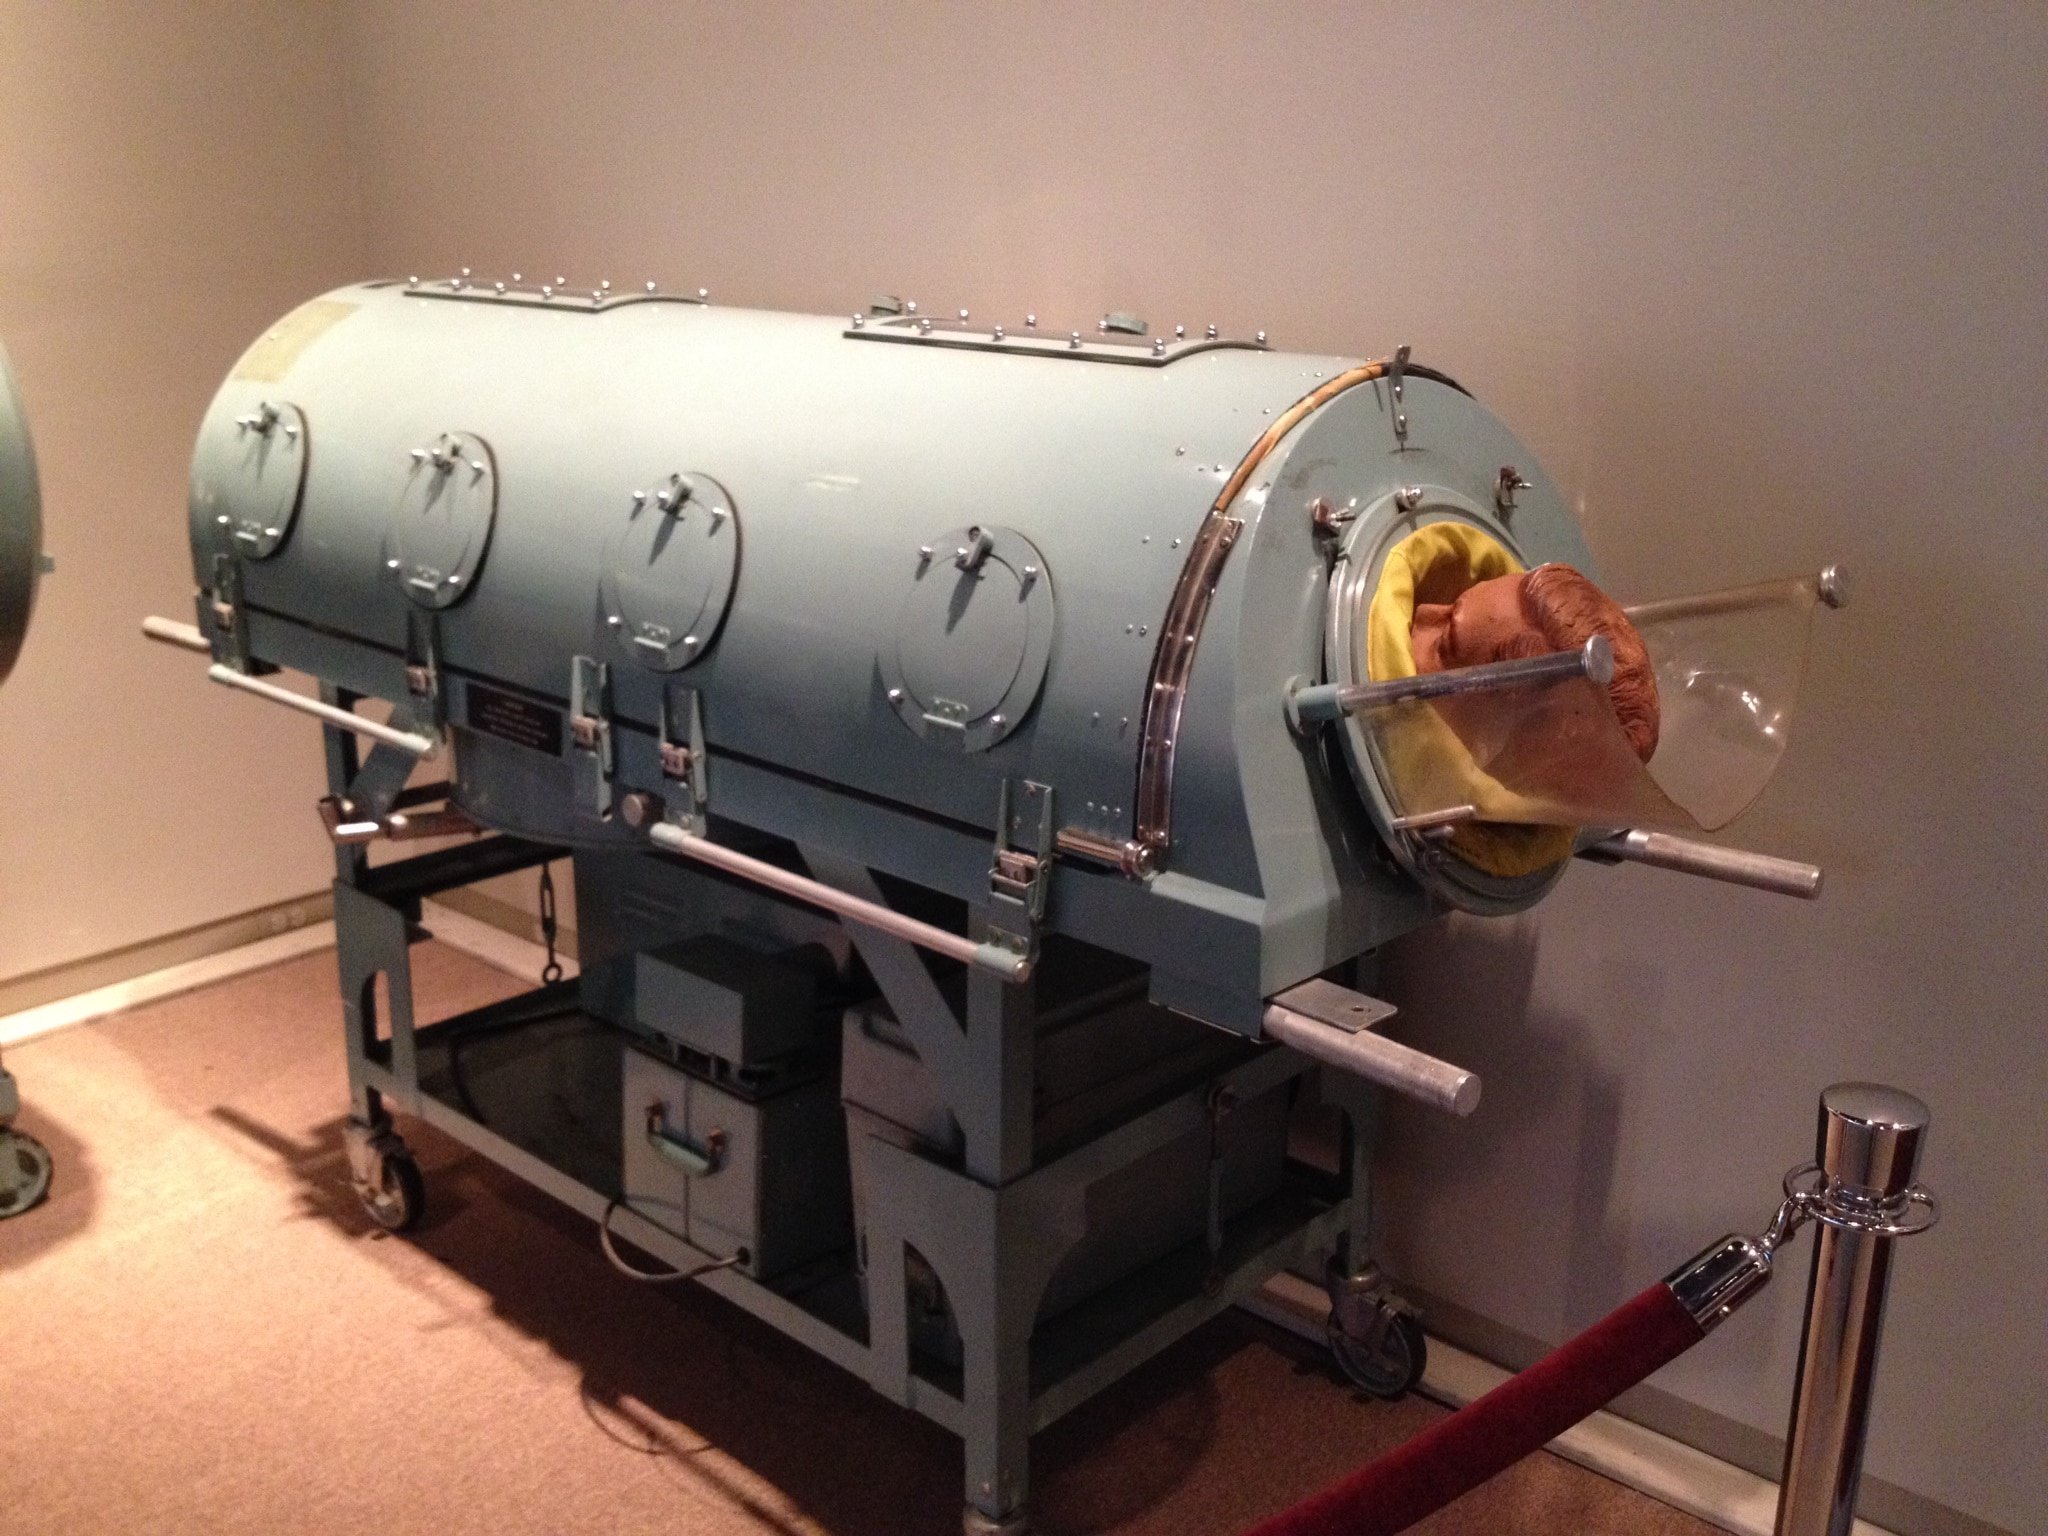 An iron lung machine